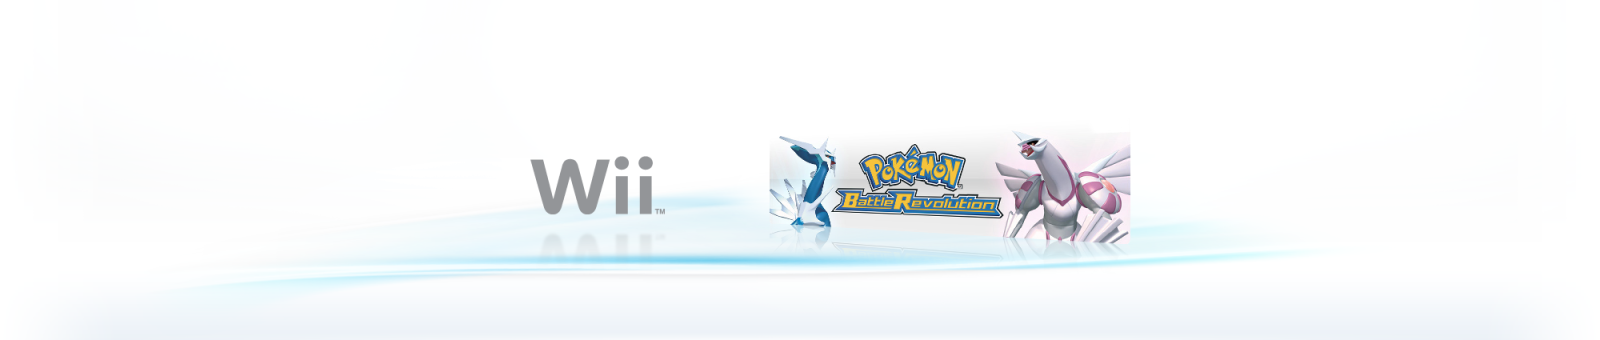 pokemon battle revolution 3ds